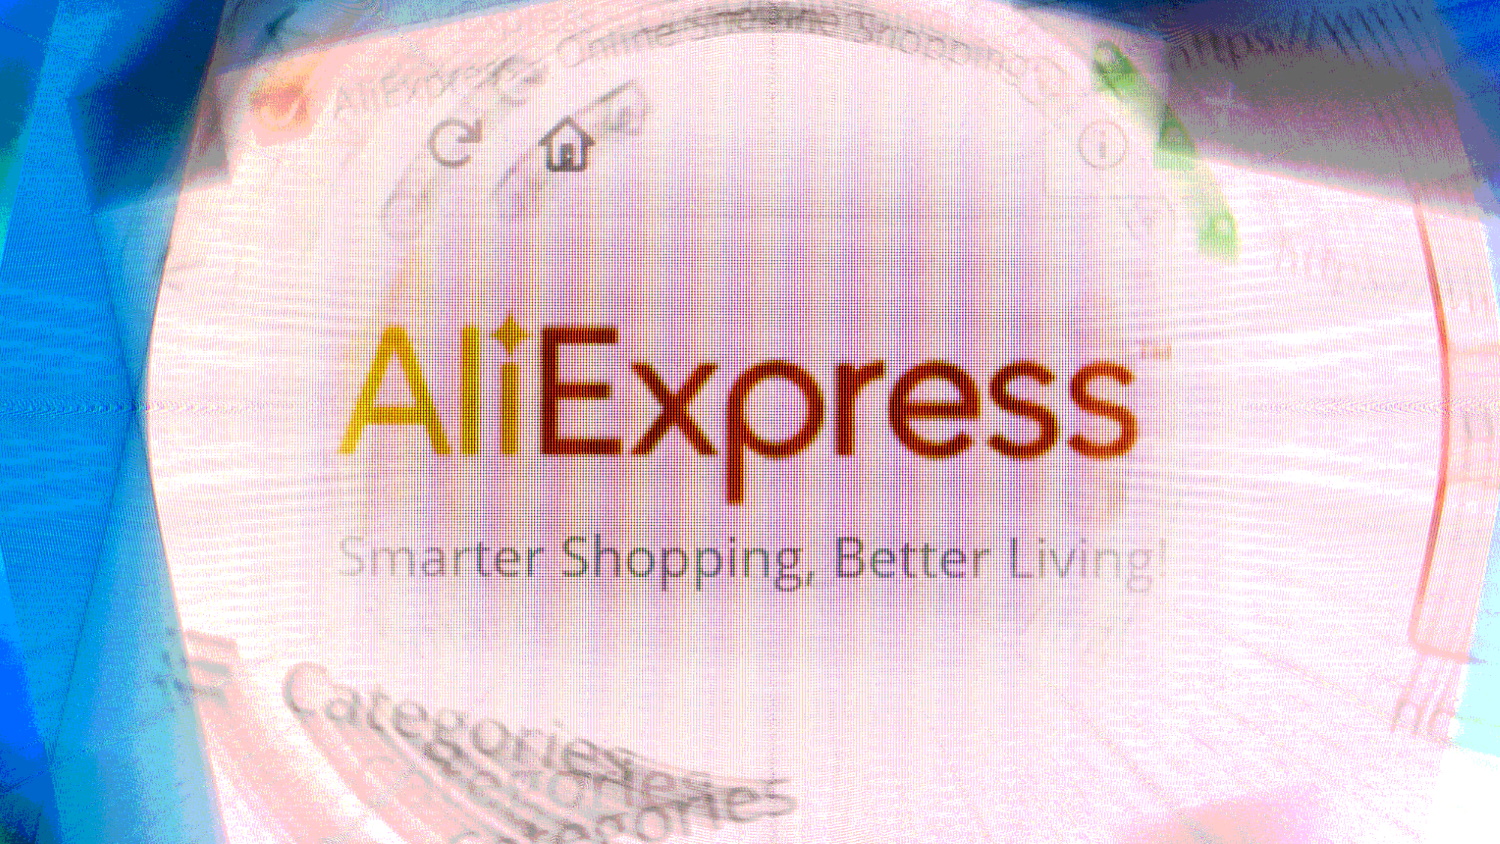 Aliexpress Müşteri Hizmetleri